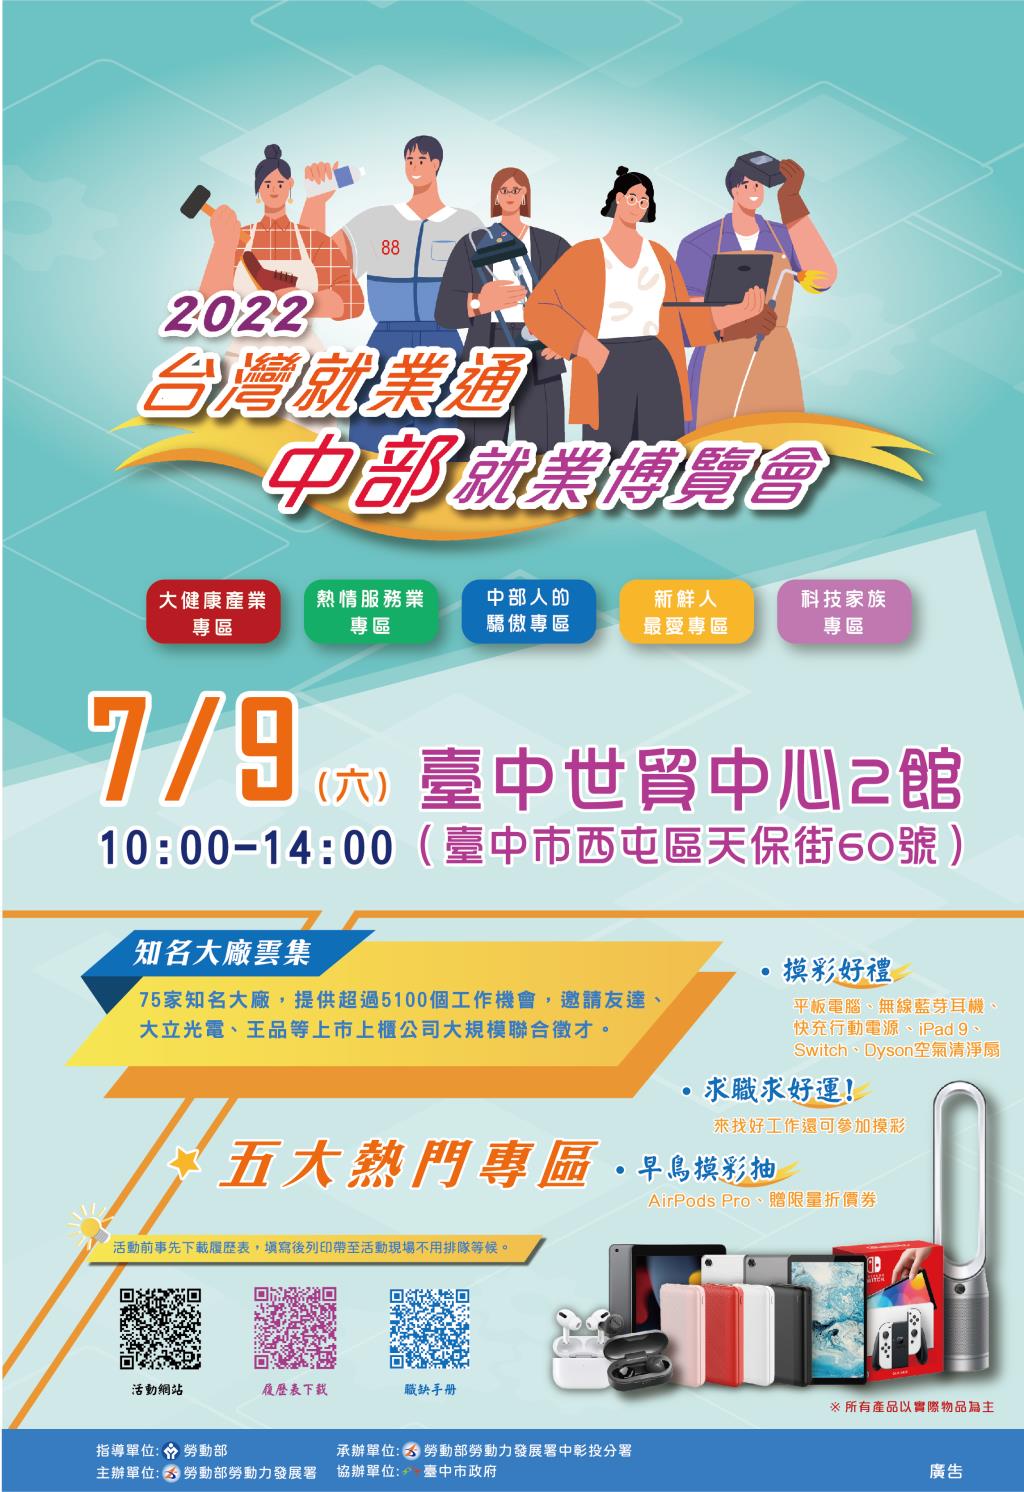 2022台灣就業通 中部就業博覽會